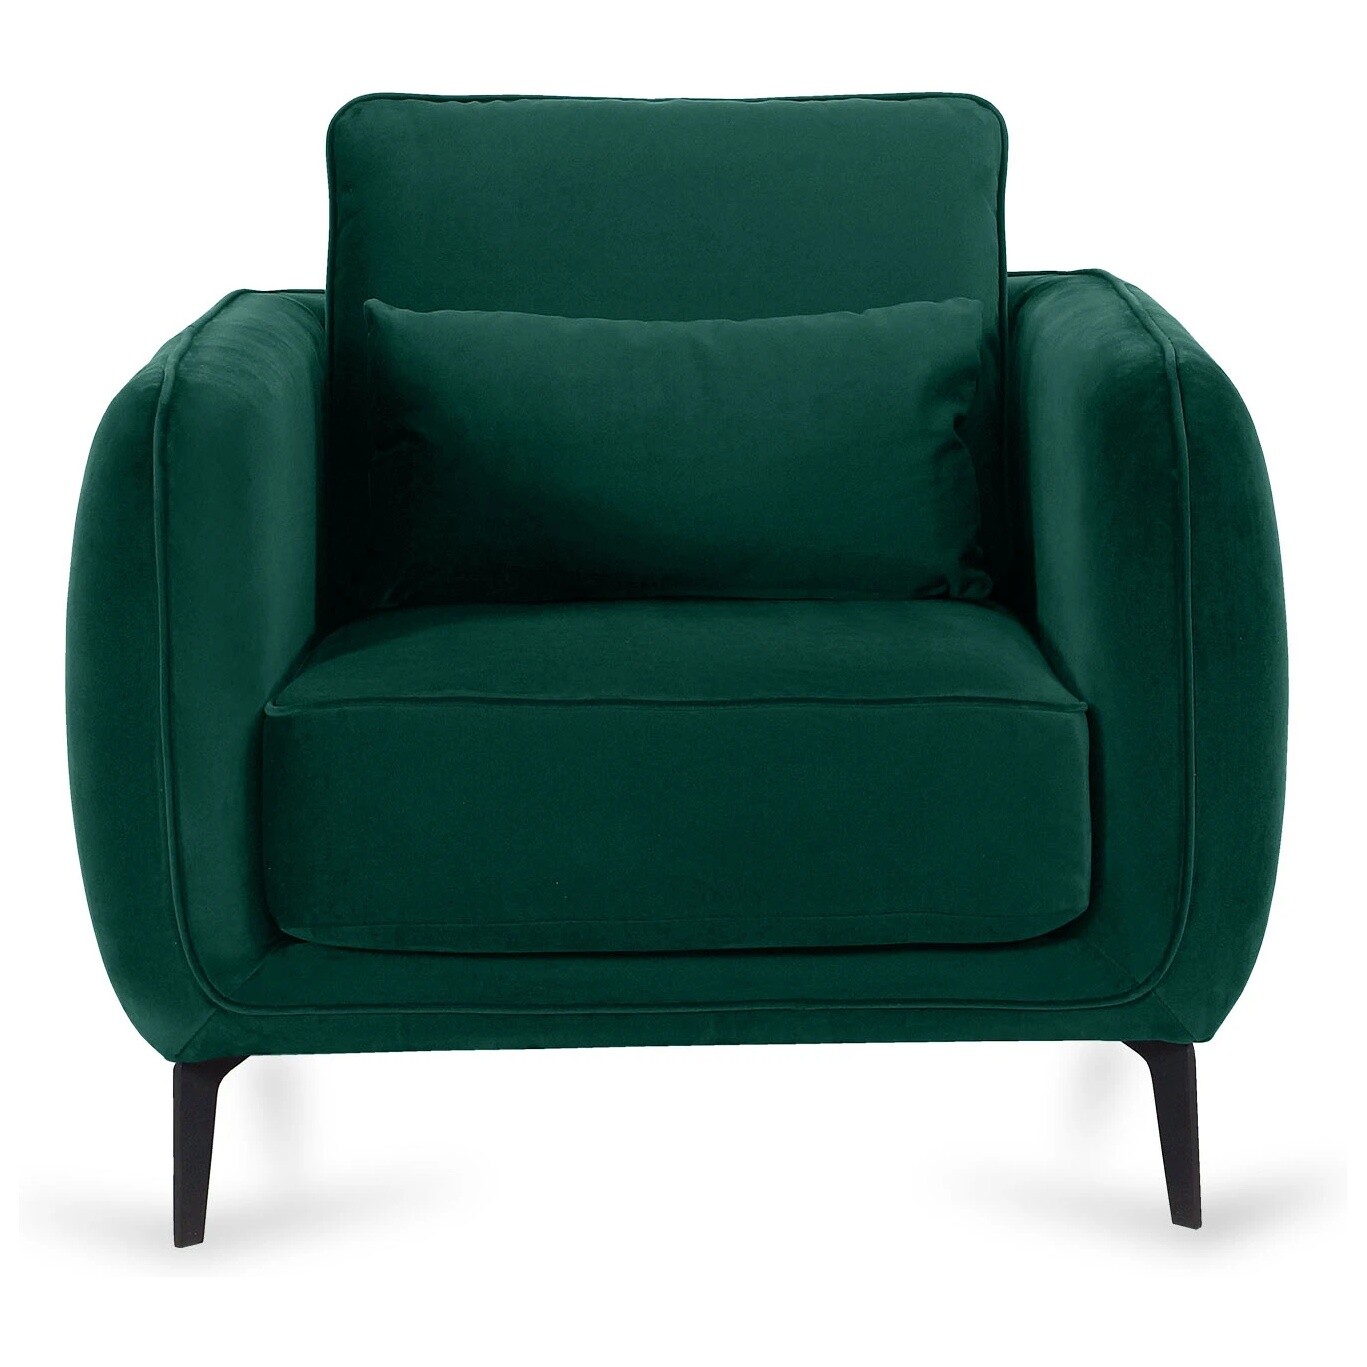 Кресло мягкое с подлокотниками ткань Foxy 74 зеленое Amsterdam